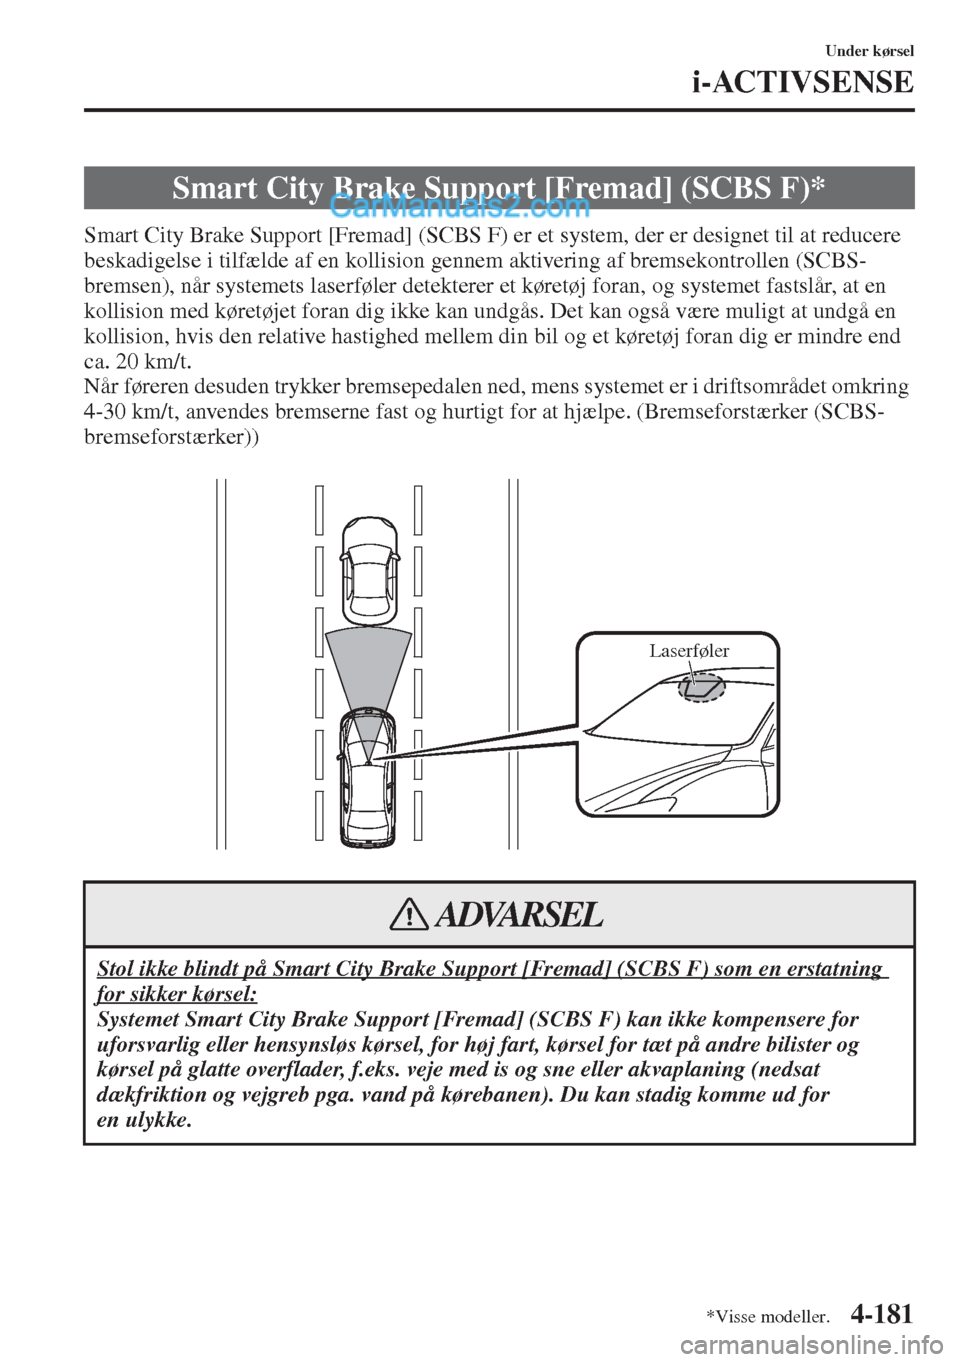 MAZDA MODEL CX-5 2015  Instruktionsbog (in Danish) 4-181
Under kørsel
i-ACTIVSENSE
Smart City Brake Support [Fremad] (SCBS F) er et system, der er designet til at reducere 
beskadigelse i tilfælde af en kollision gennem aktivering af bremsekontrolle